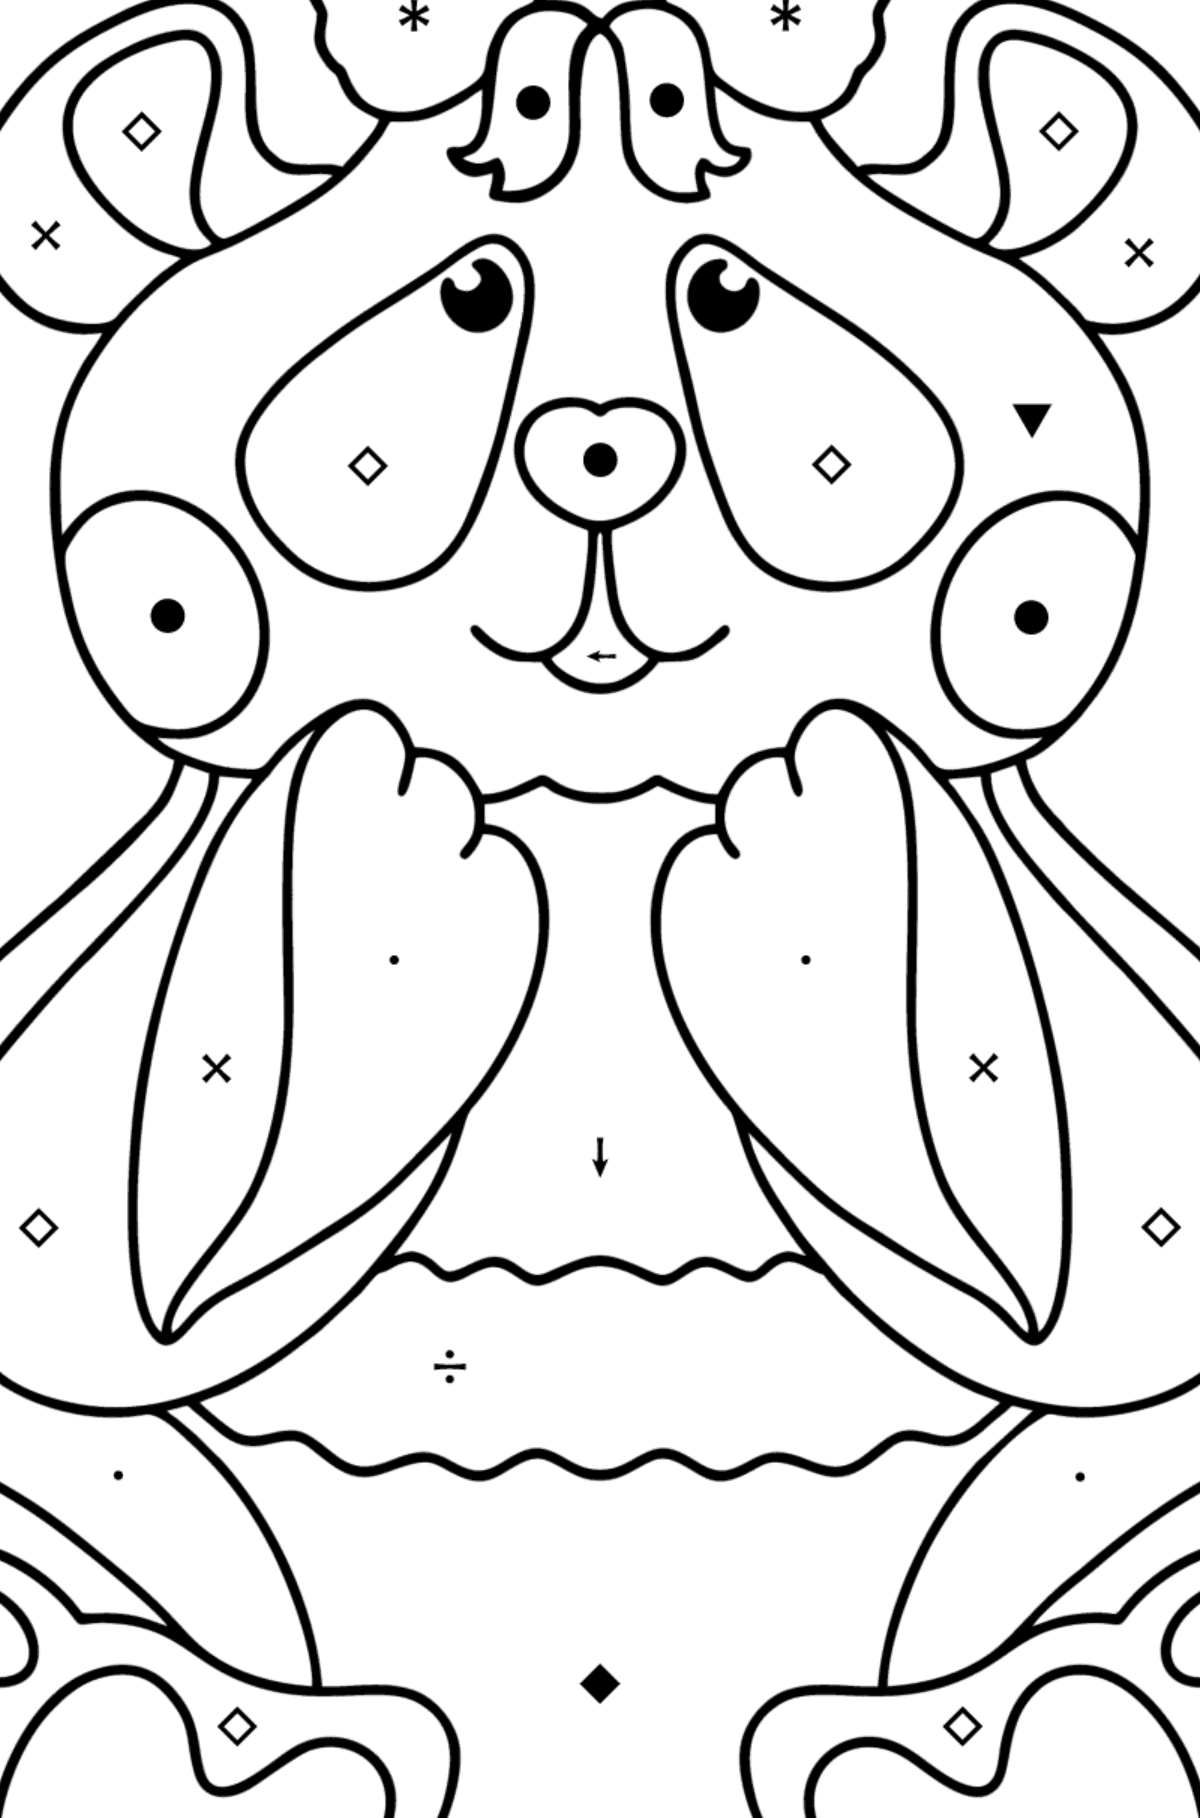 Boyama sayfası bebek panda - Sembollerle Boyama çocuklar için